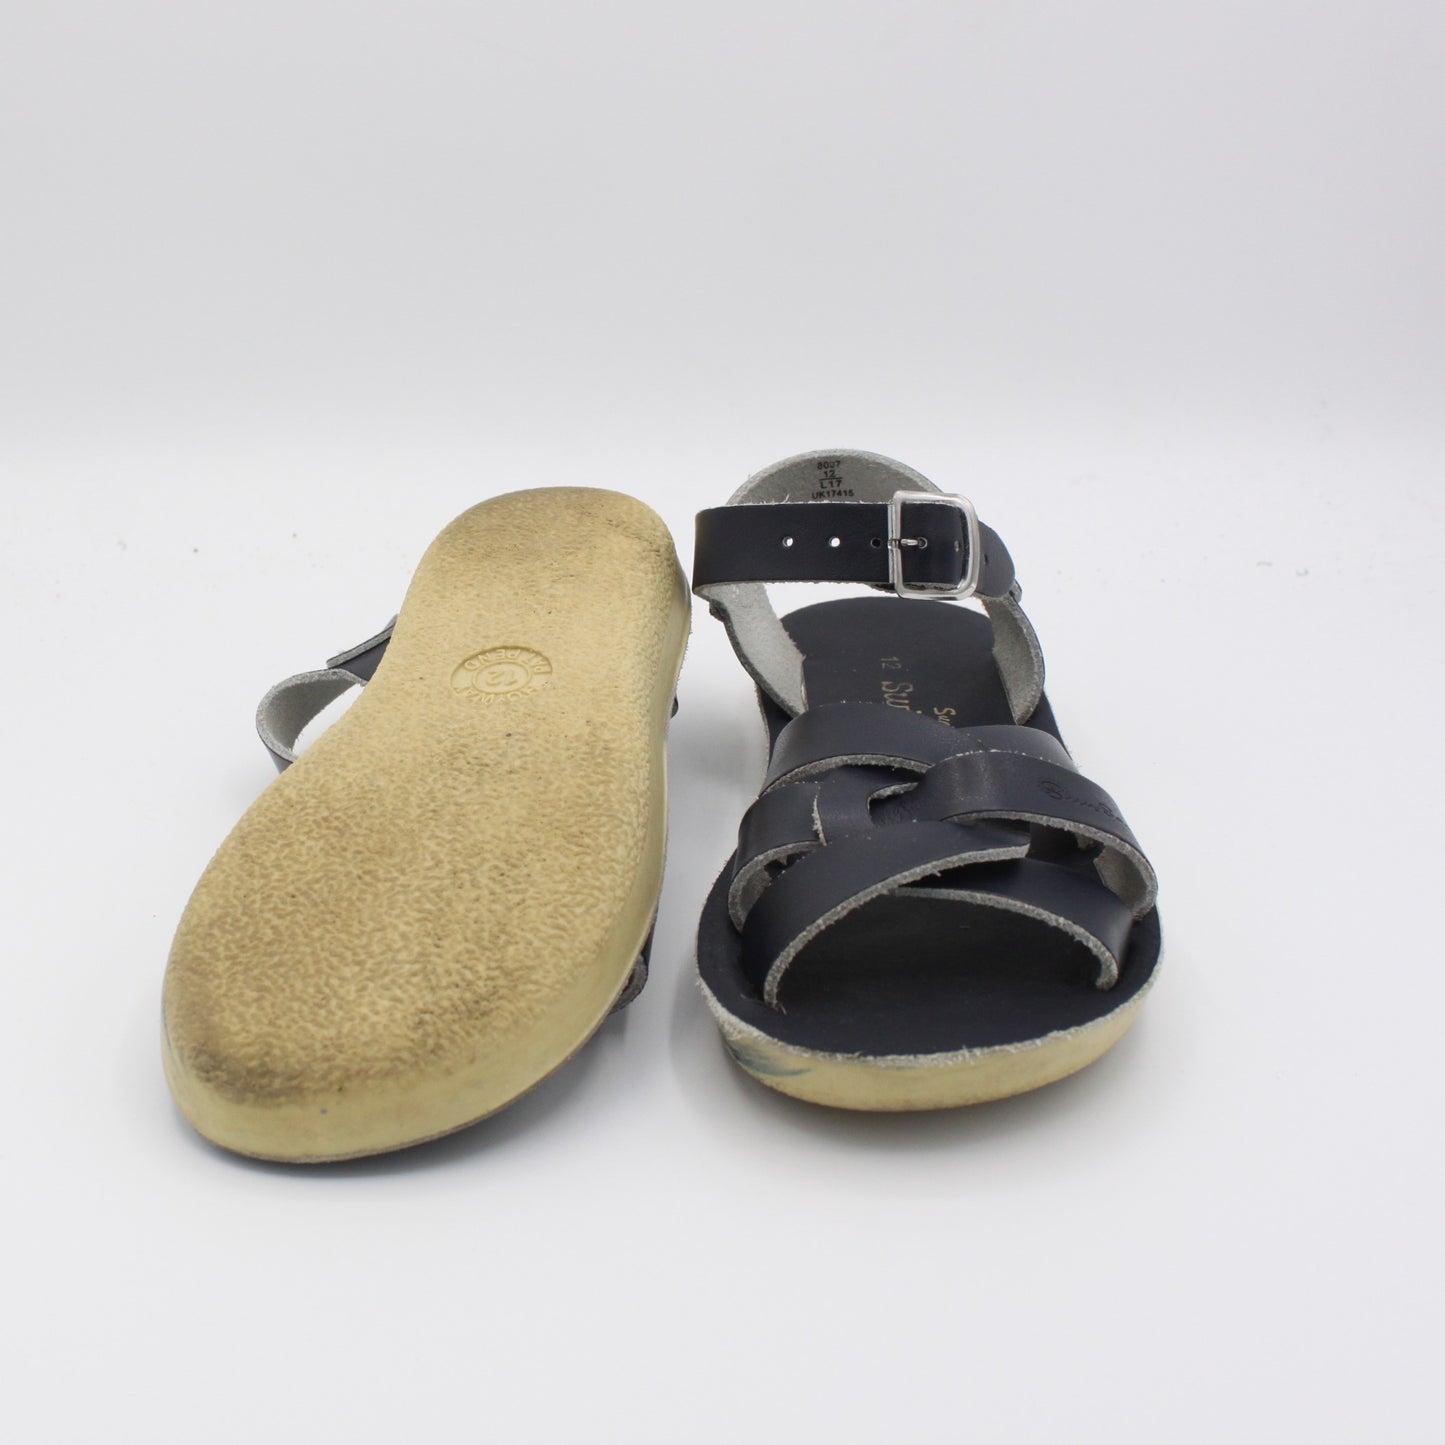 Pre-loved Sandals (EU29)